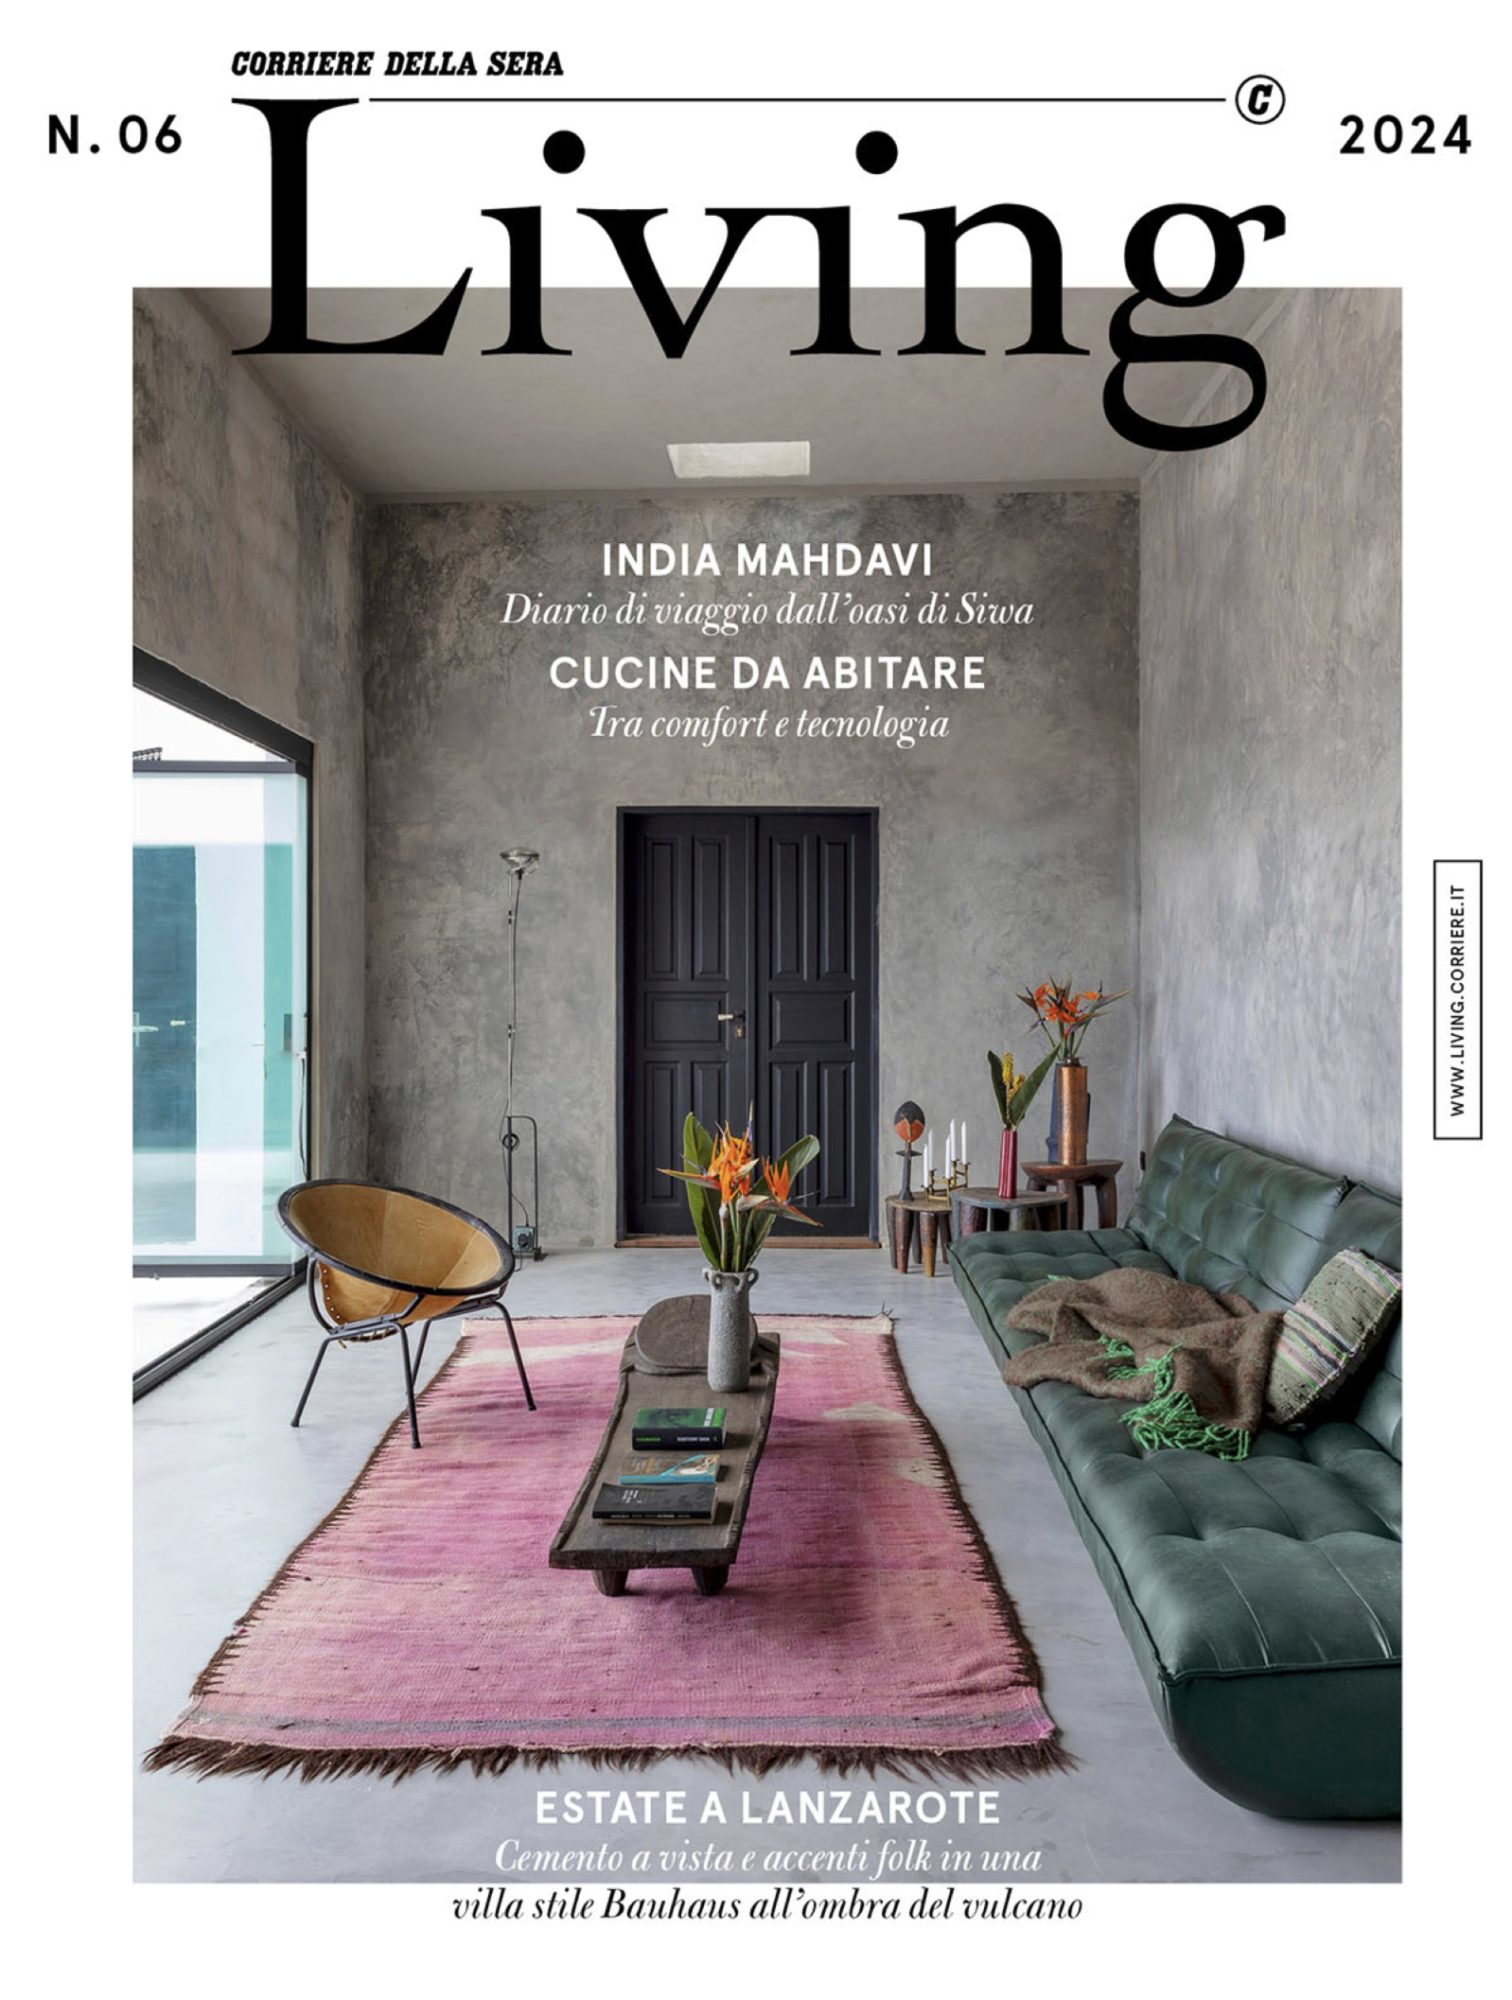 Living Corriere Della Sera – N. 06 - India Mahdavi